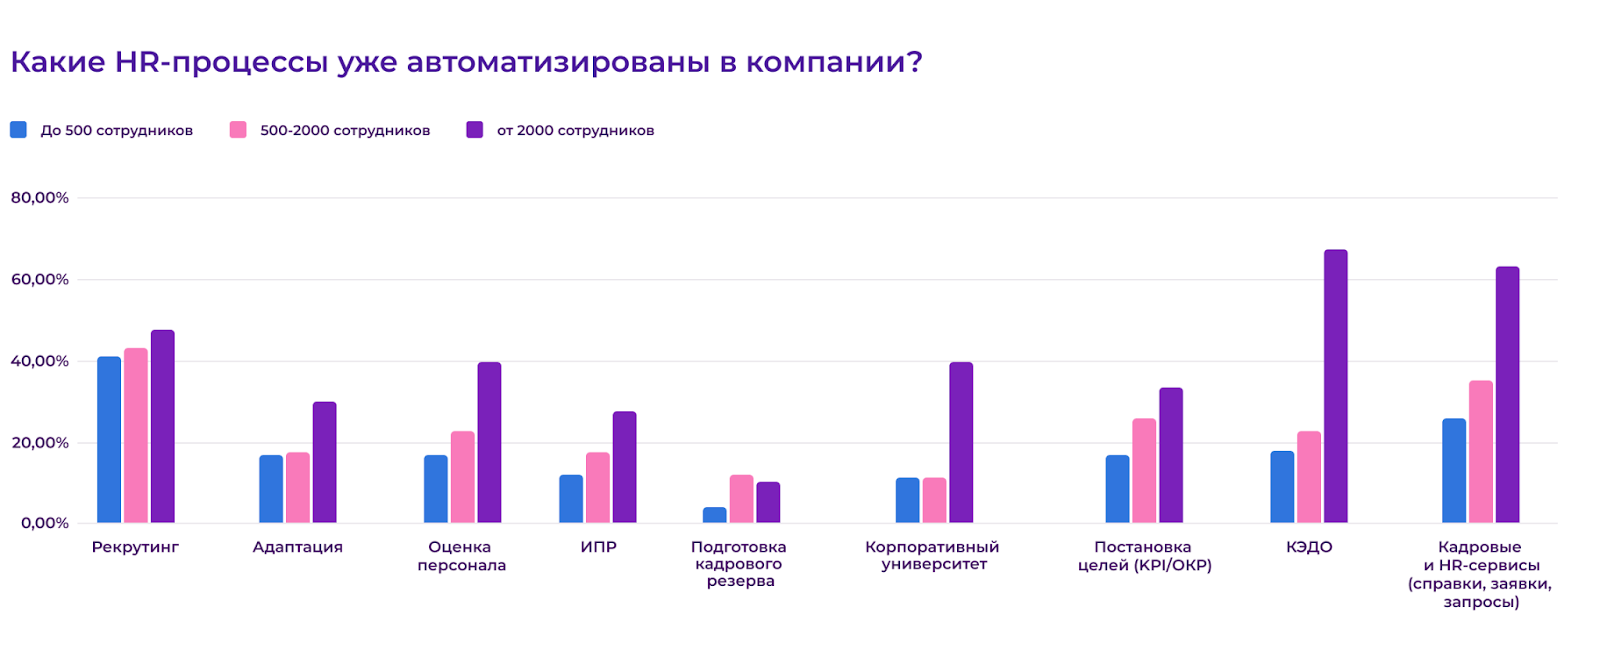 Будущее HR-систем: какие технологии «захватят» российский рынок